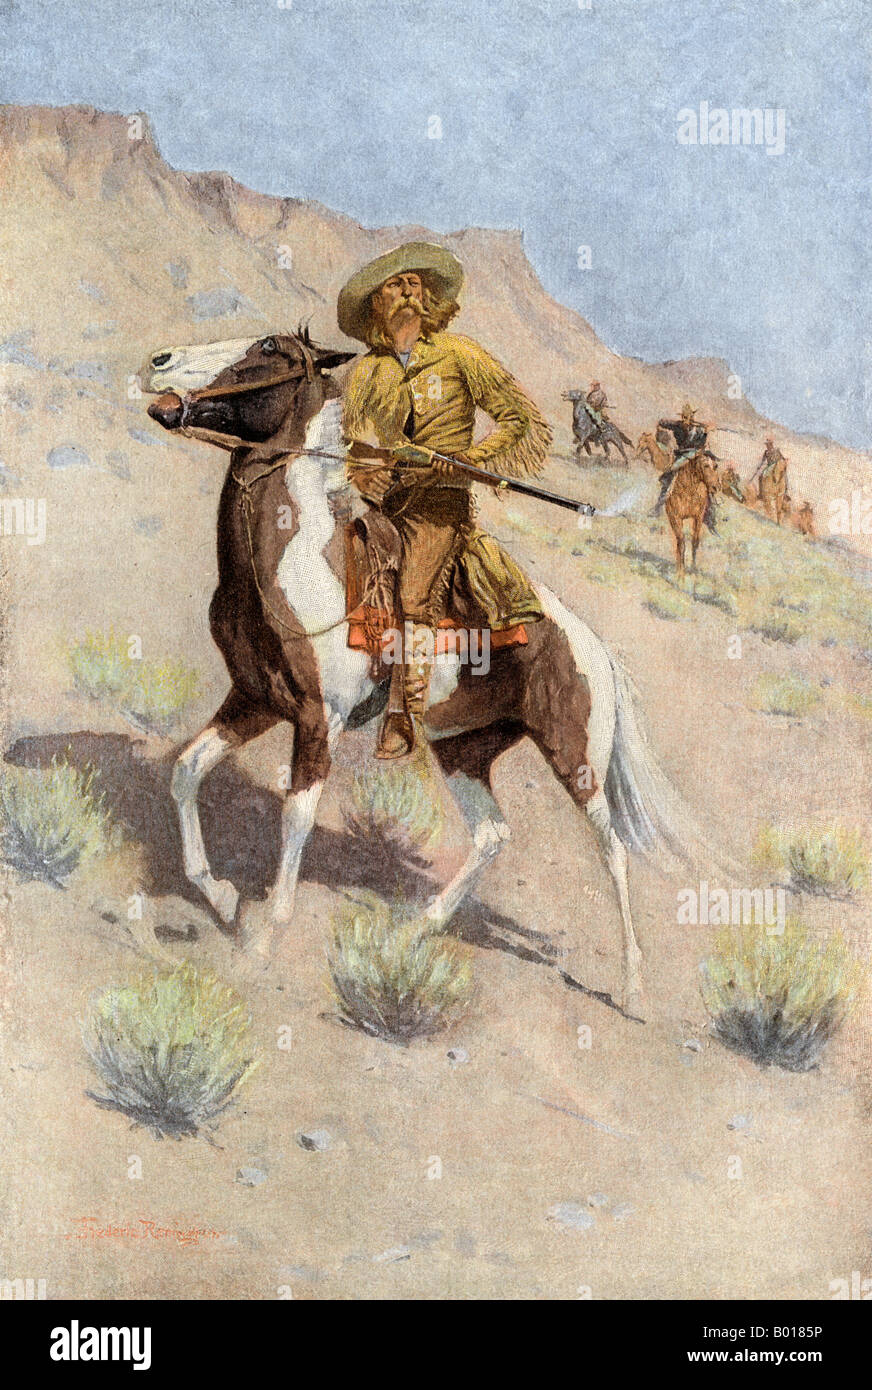 Un pionnier scout employés par l'Armée US à l'ouverture de l'ouest. Demi-teinte de couleur d'une illustration Frederic Remington Banque D'Images